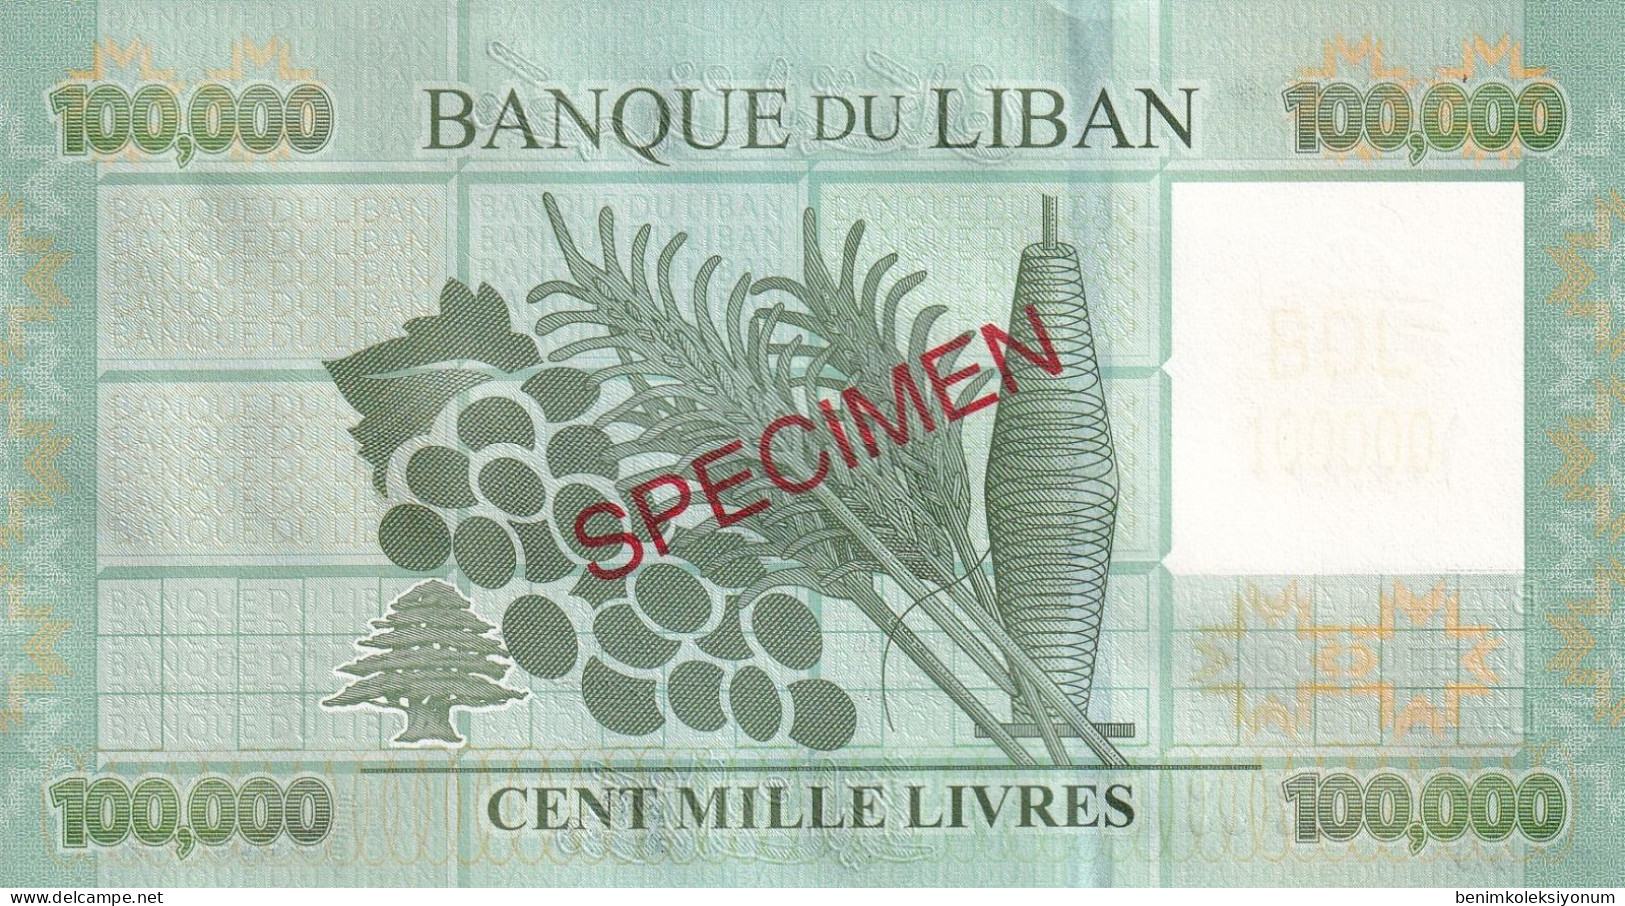 Lebanon 100,000 Livres Specimen (2012) P95s UNC - Lebanon